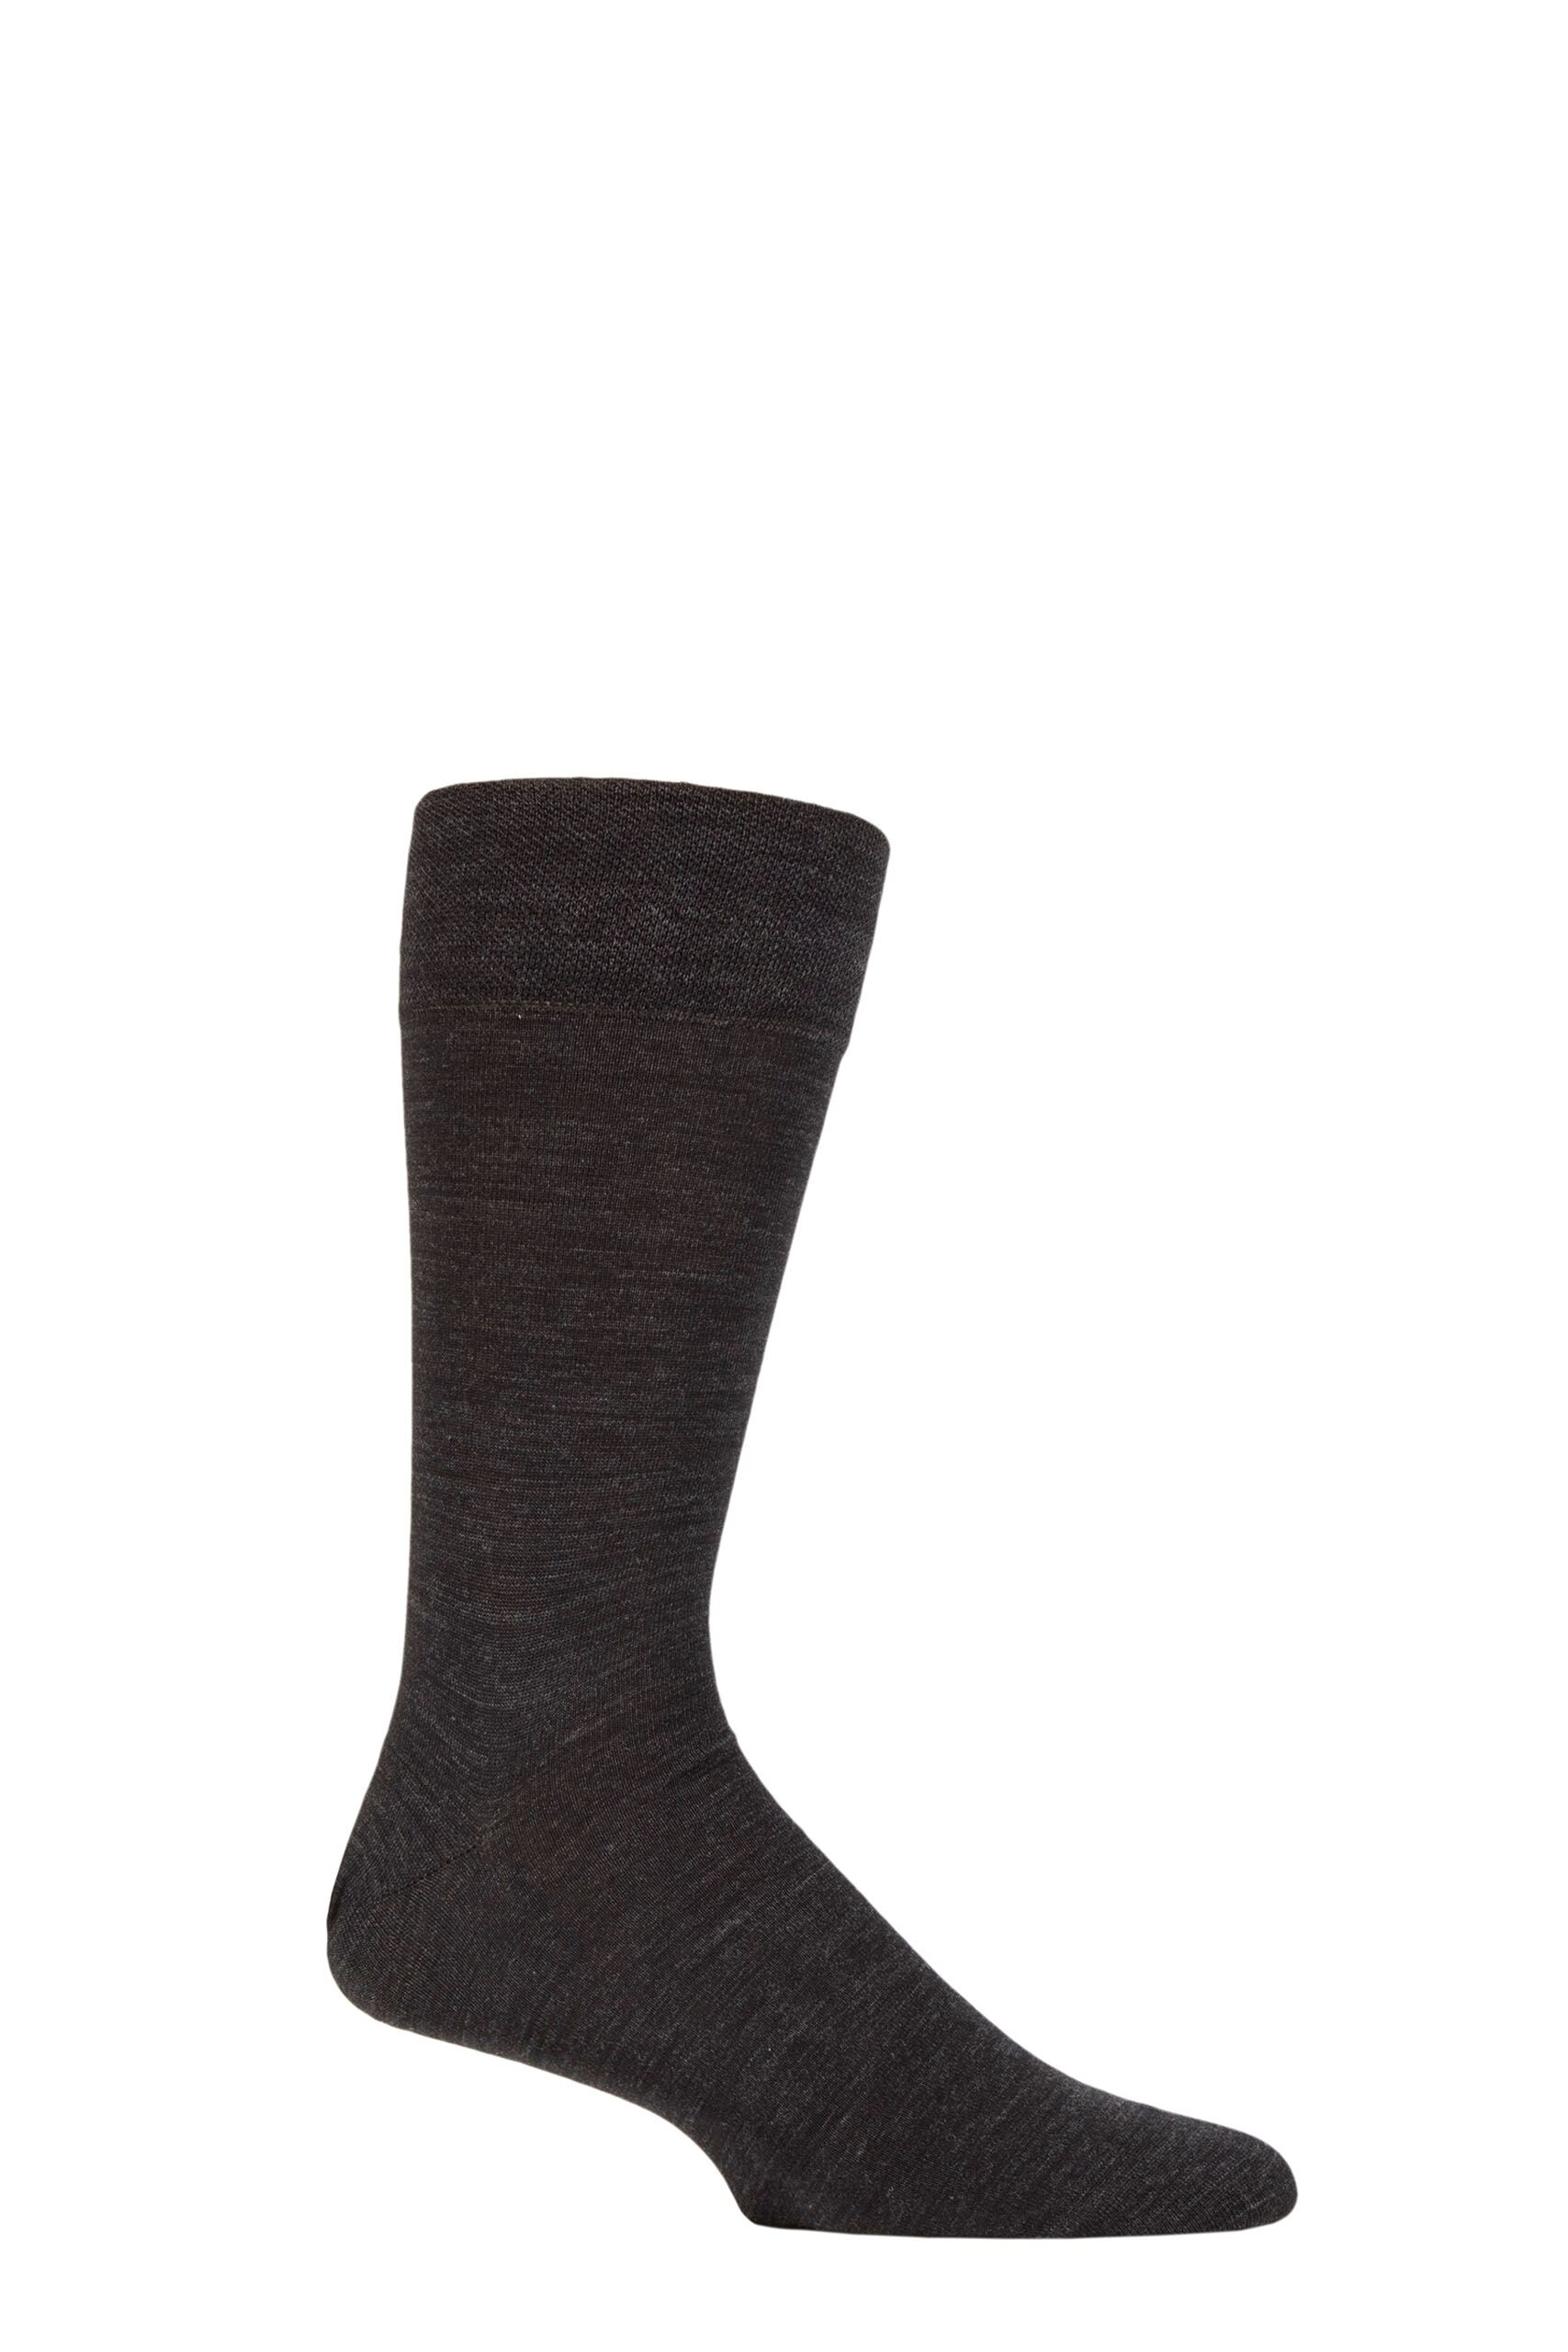 Mens 1 Pair Falke Sensitive London Combed Cotton Socks Black 5.5-8 Mens